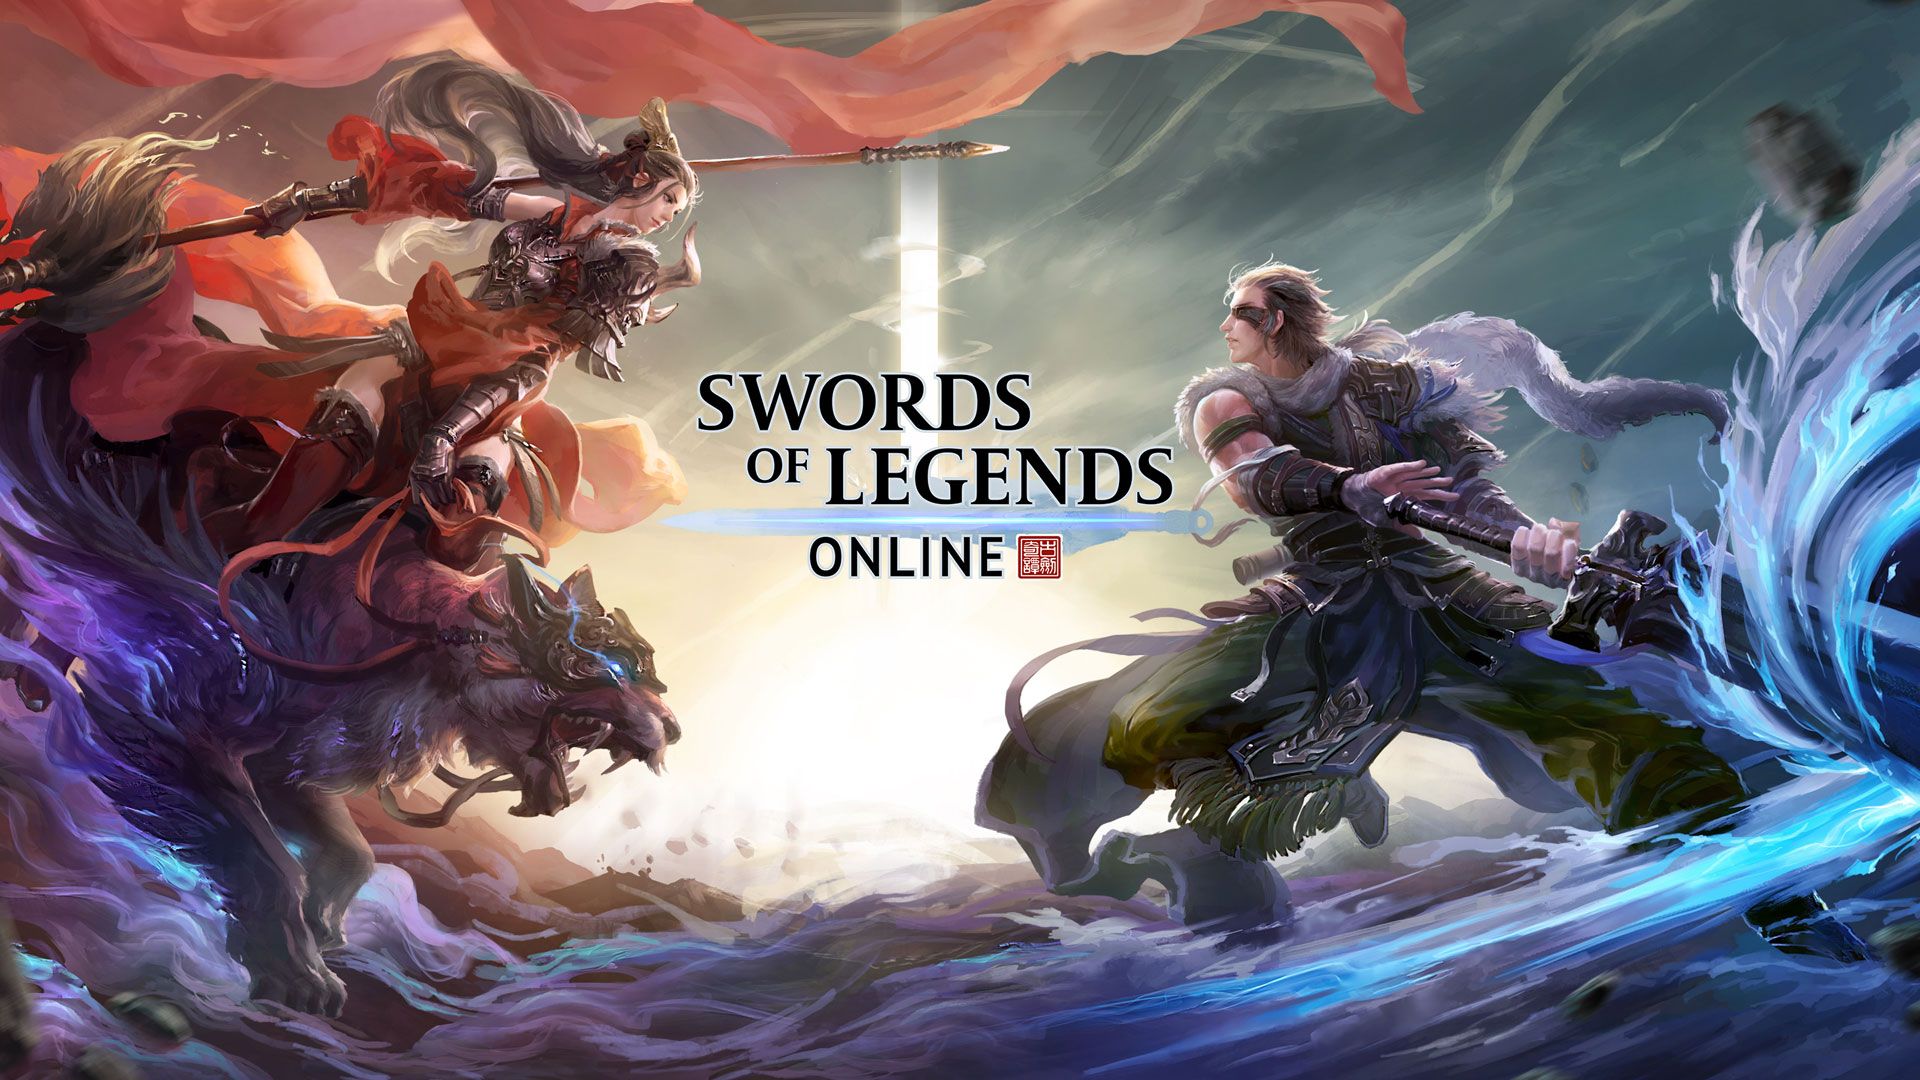 Free Swords of Legends Online Wallpaper in 1920x1080